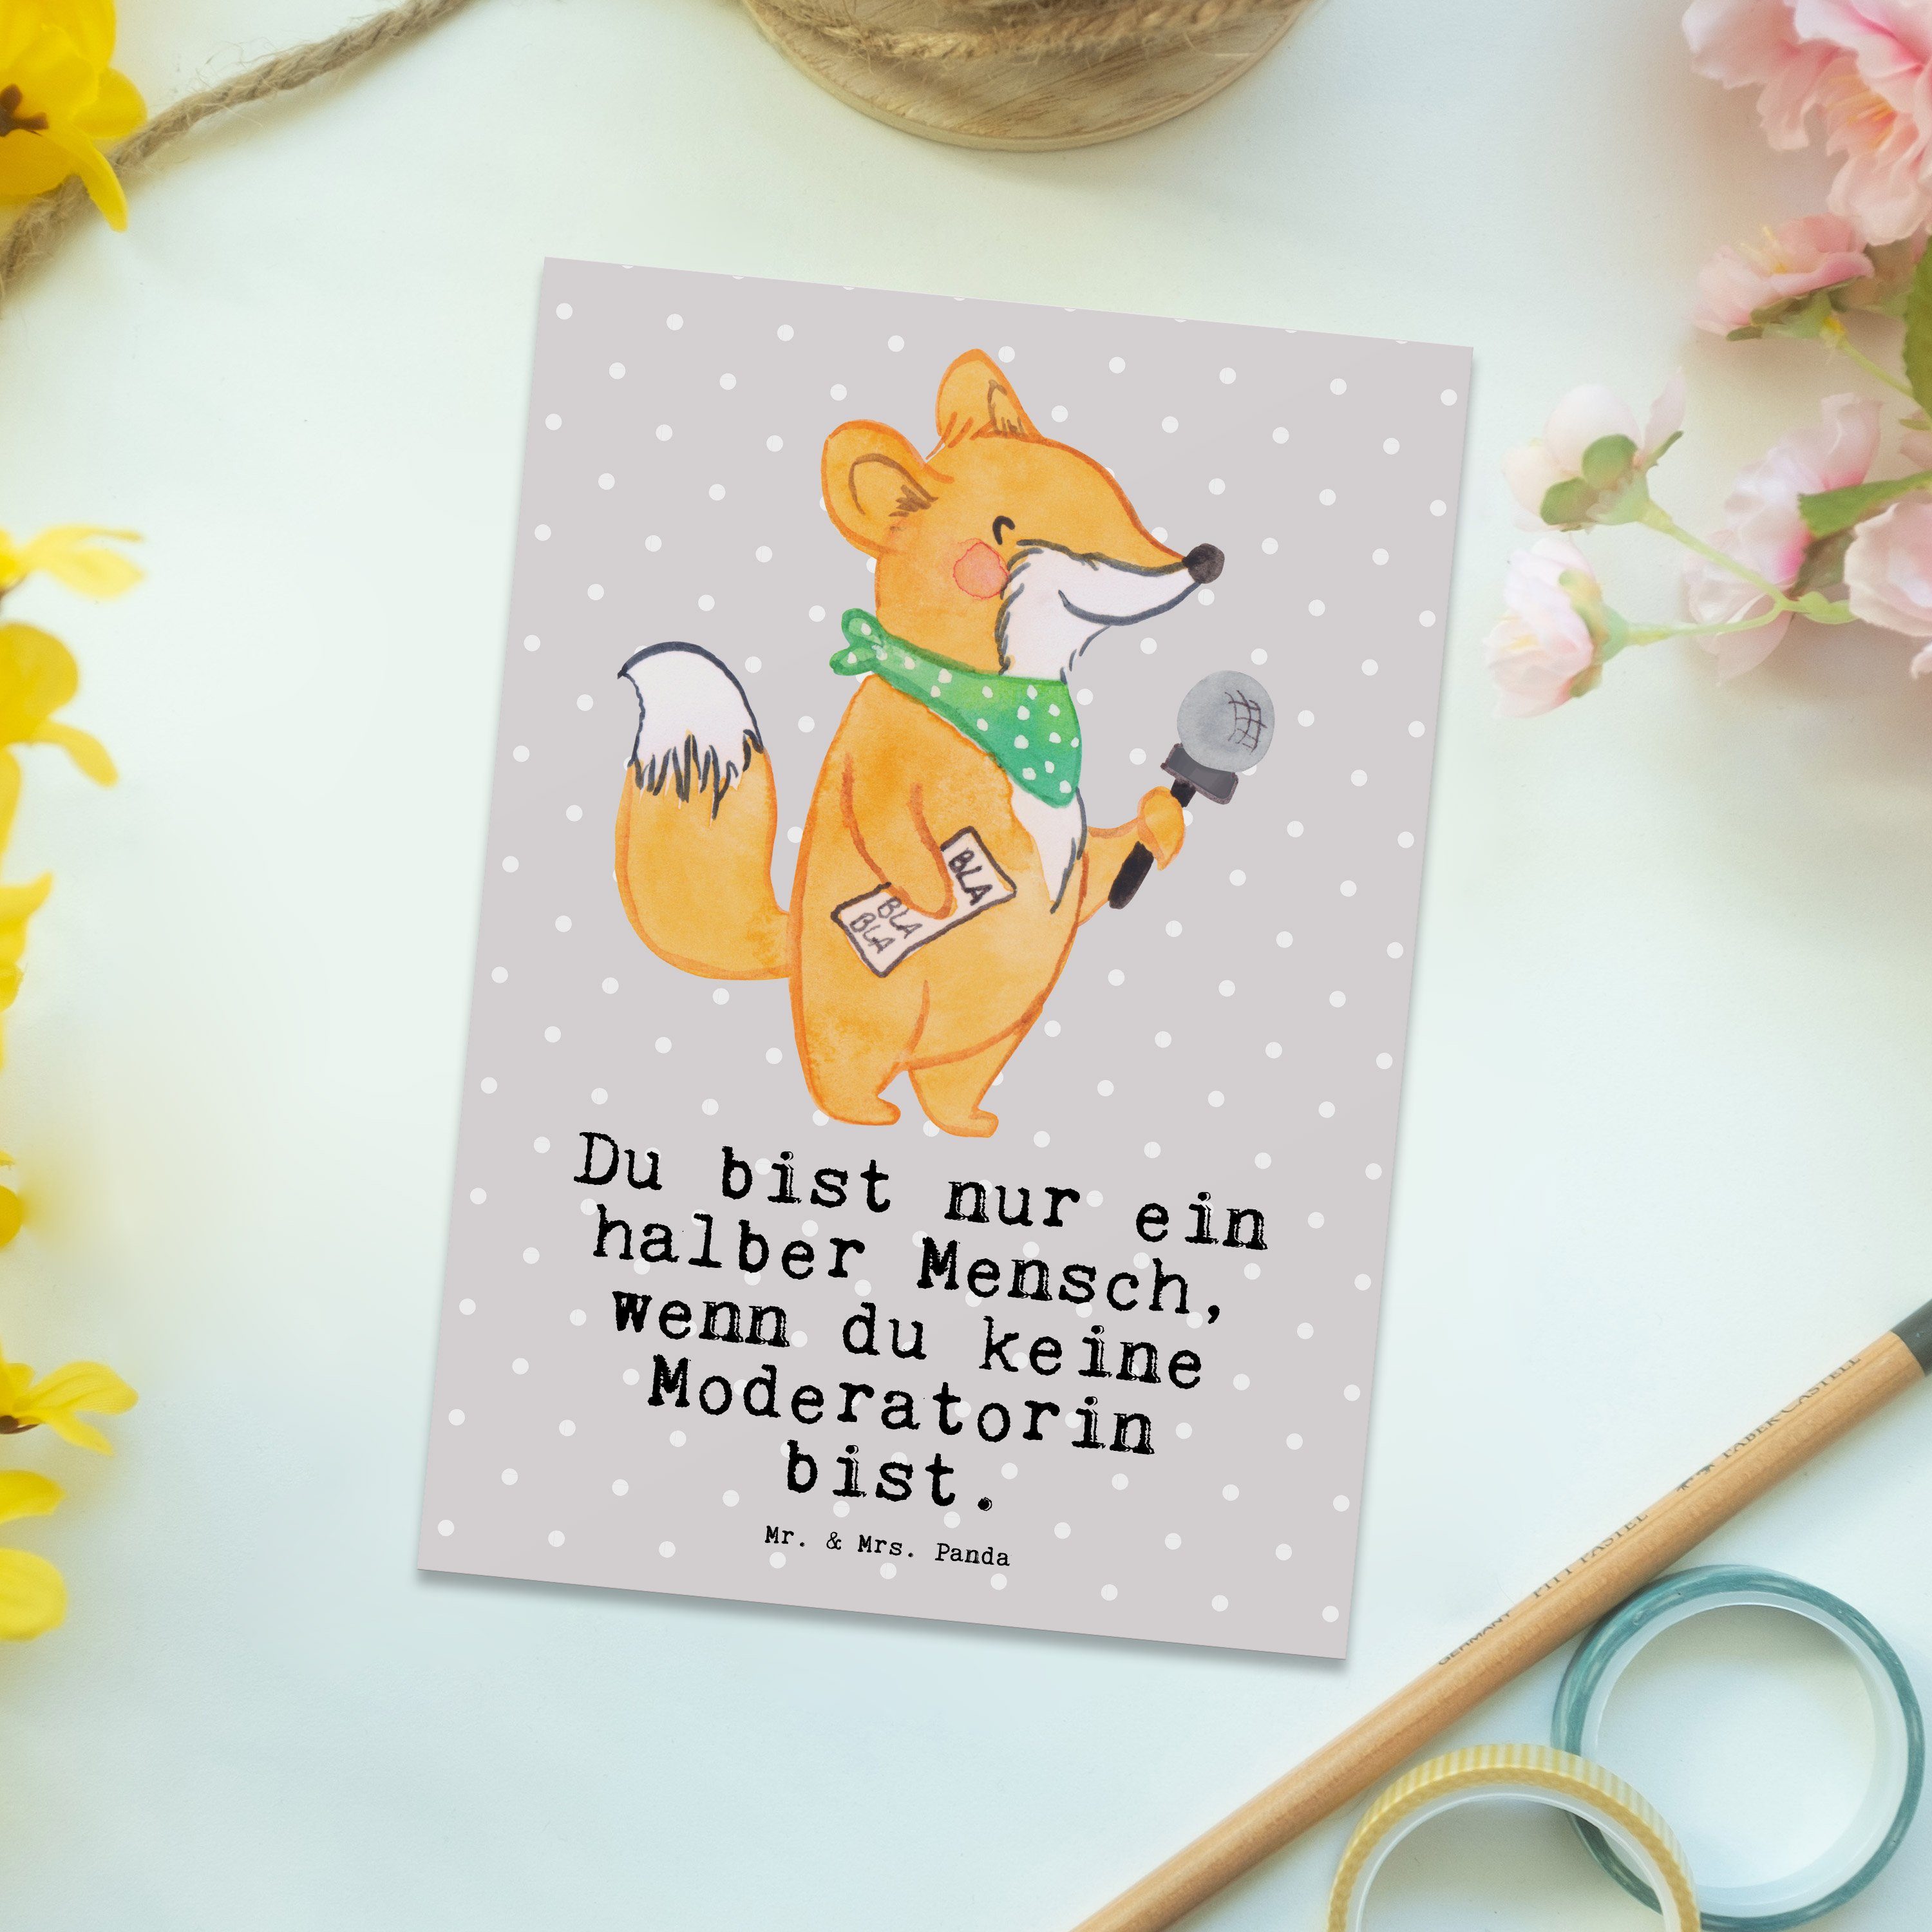 Mr. & Mrs. Panda Postkarte Moderatorin mit Herz - Grau Pastell - Geschenk, Danke, Einladung, Geb